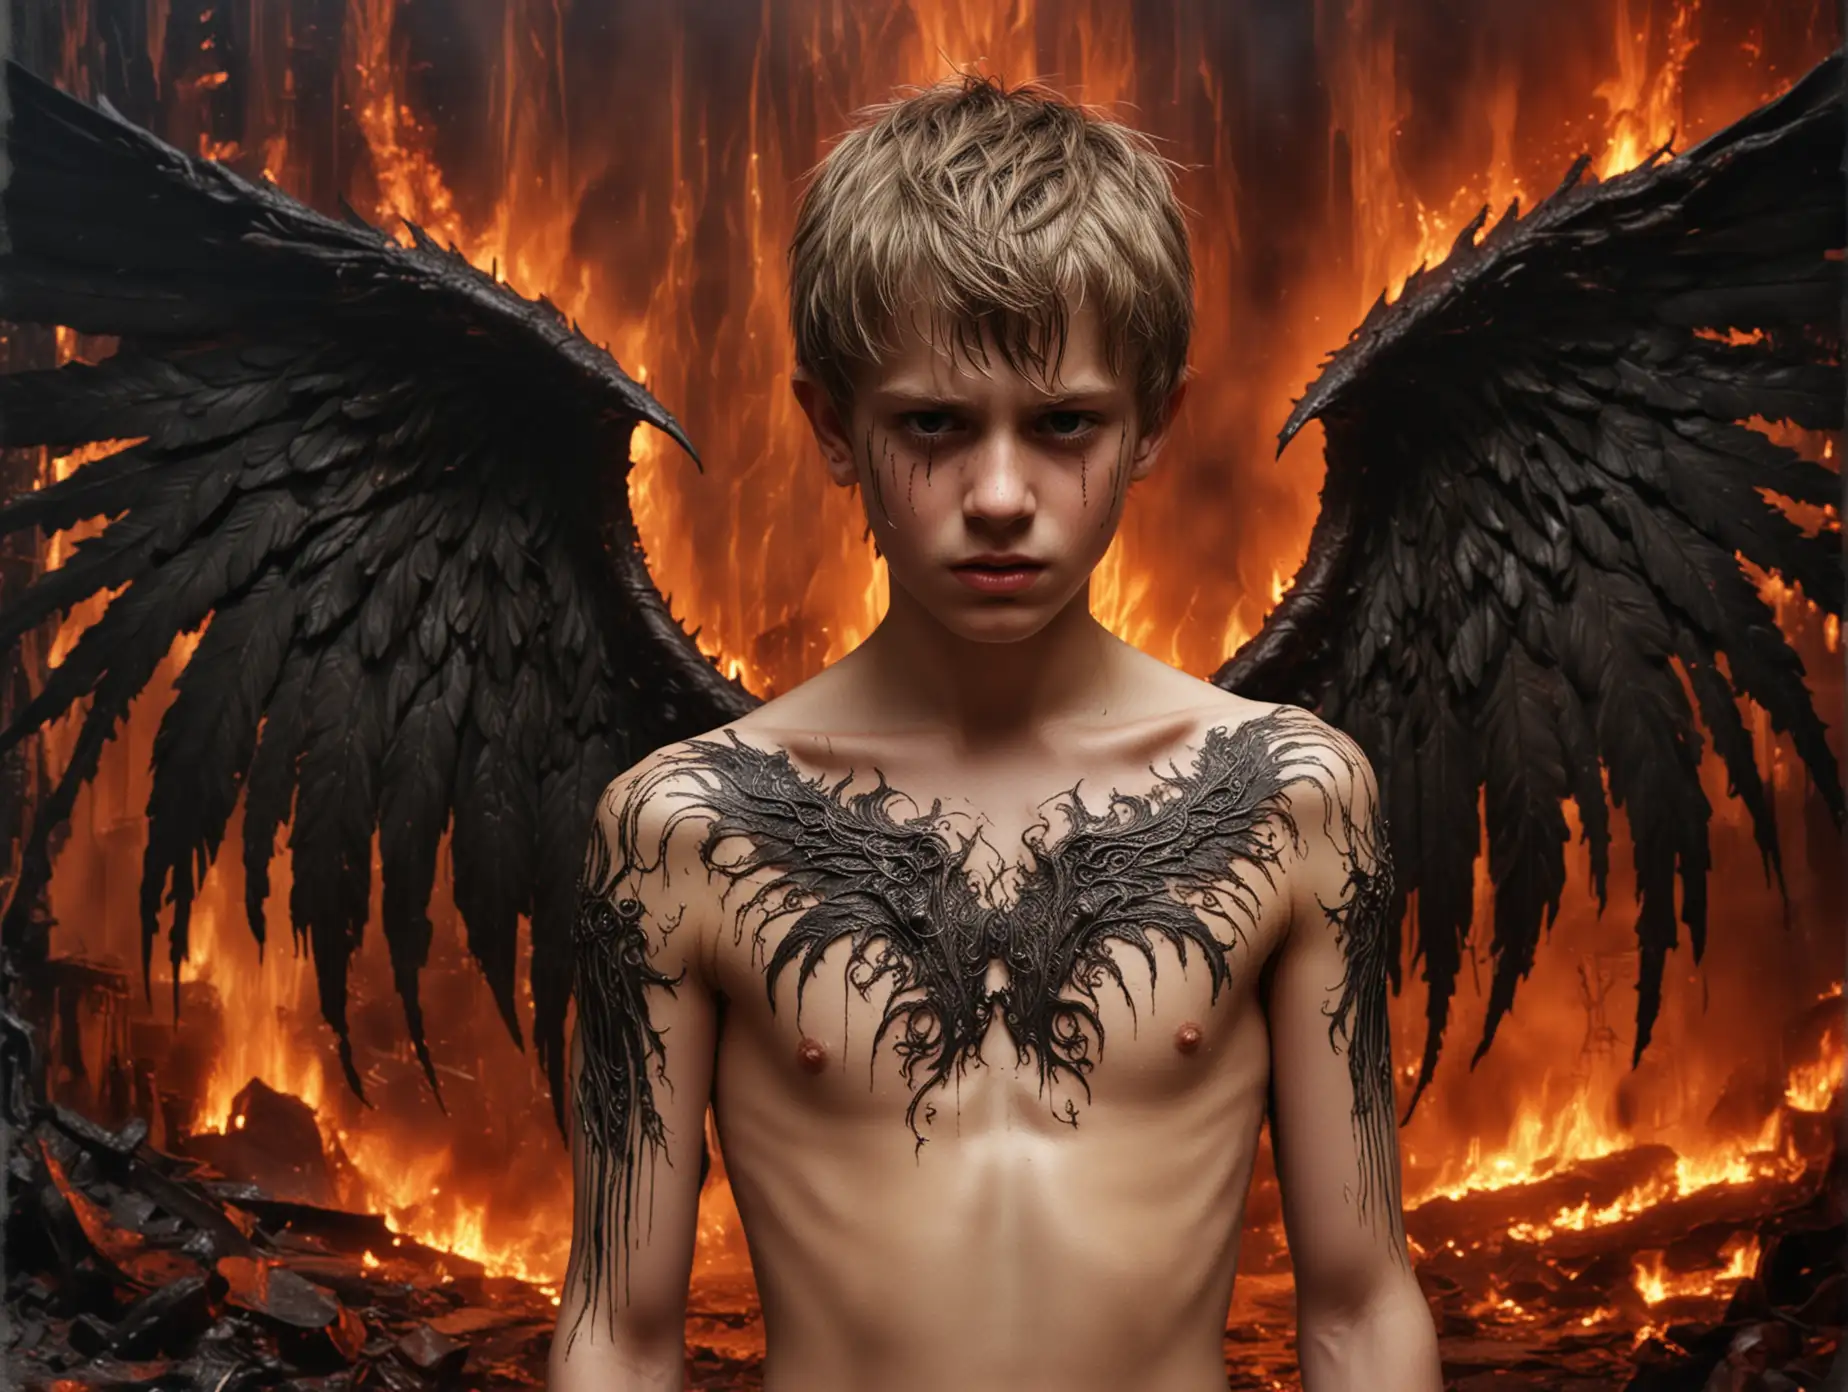 Sorrowful-Teenage-Boy-with-Demonic-Wings-in-Fiery-Abyss